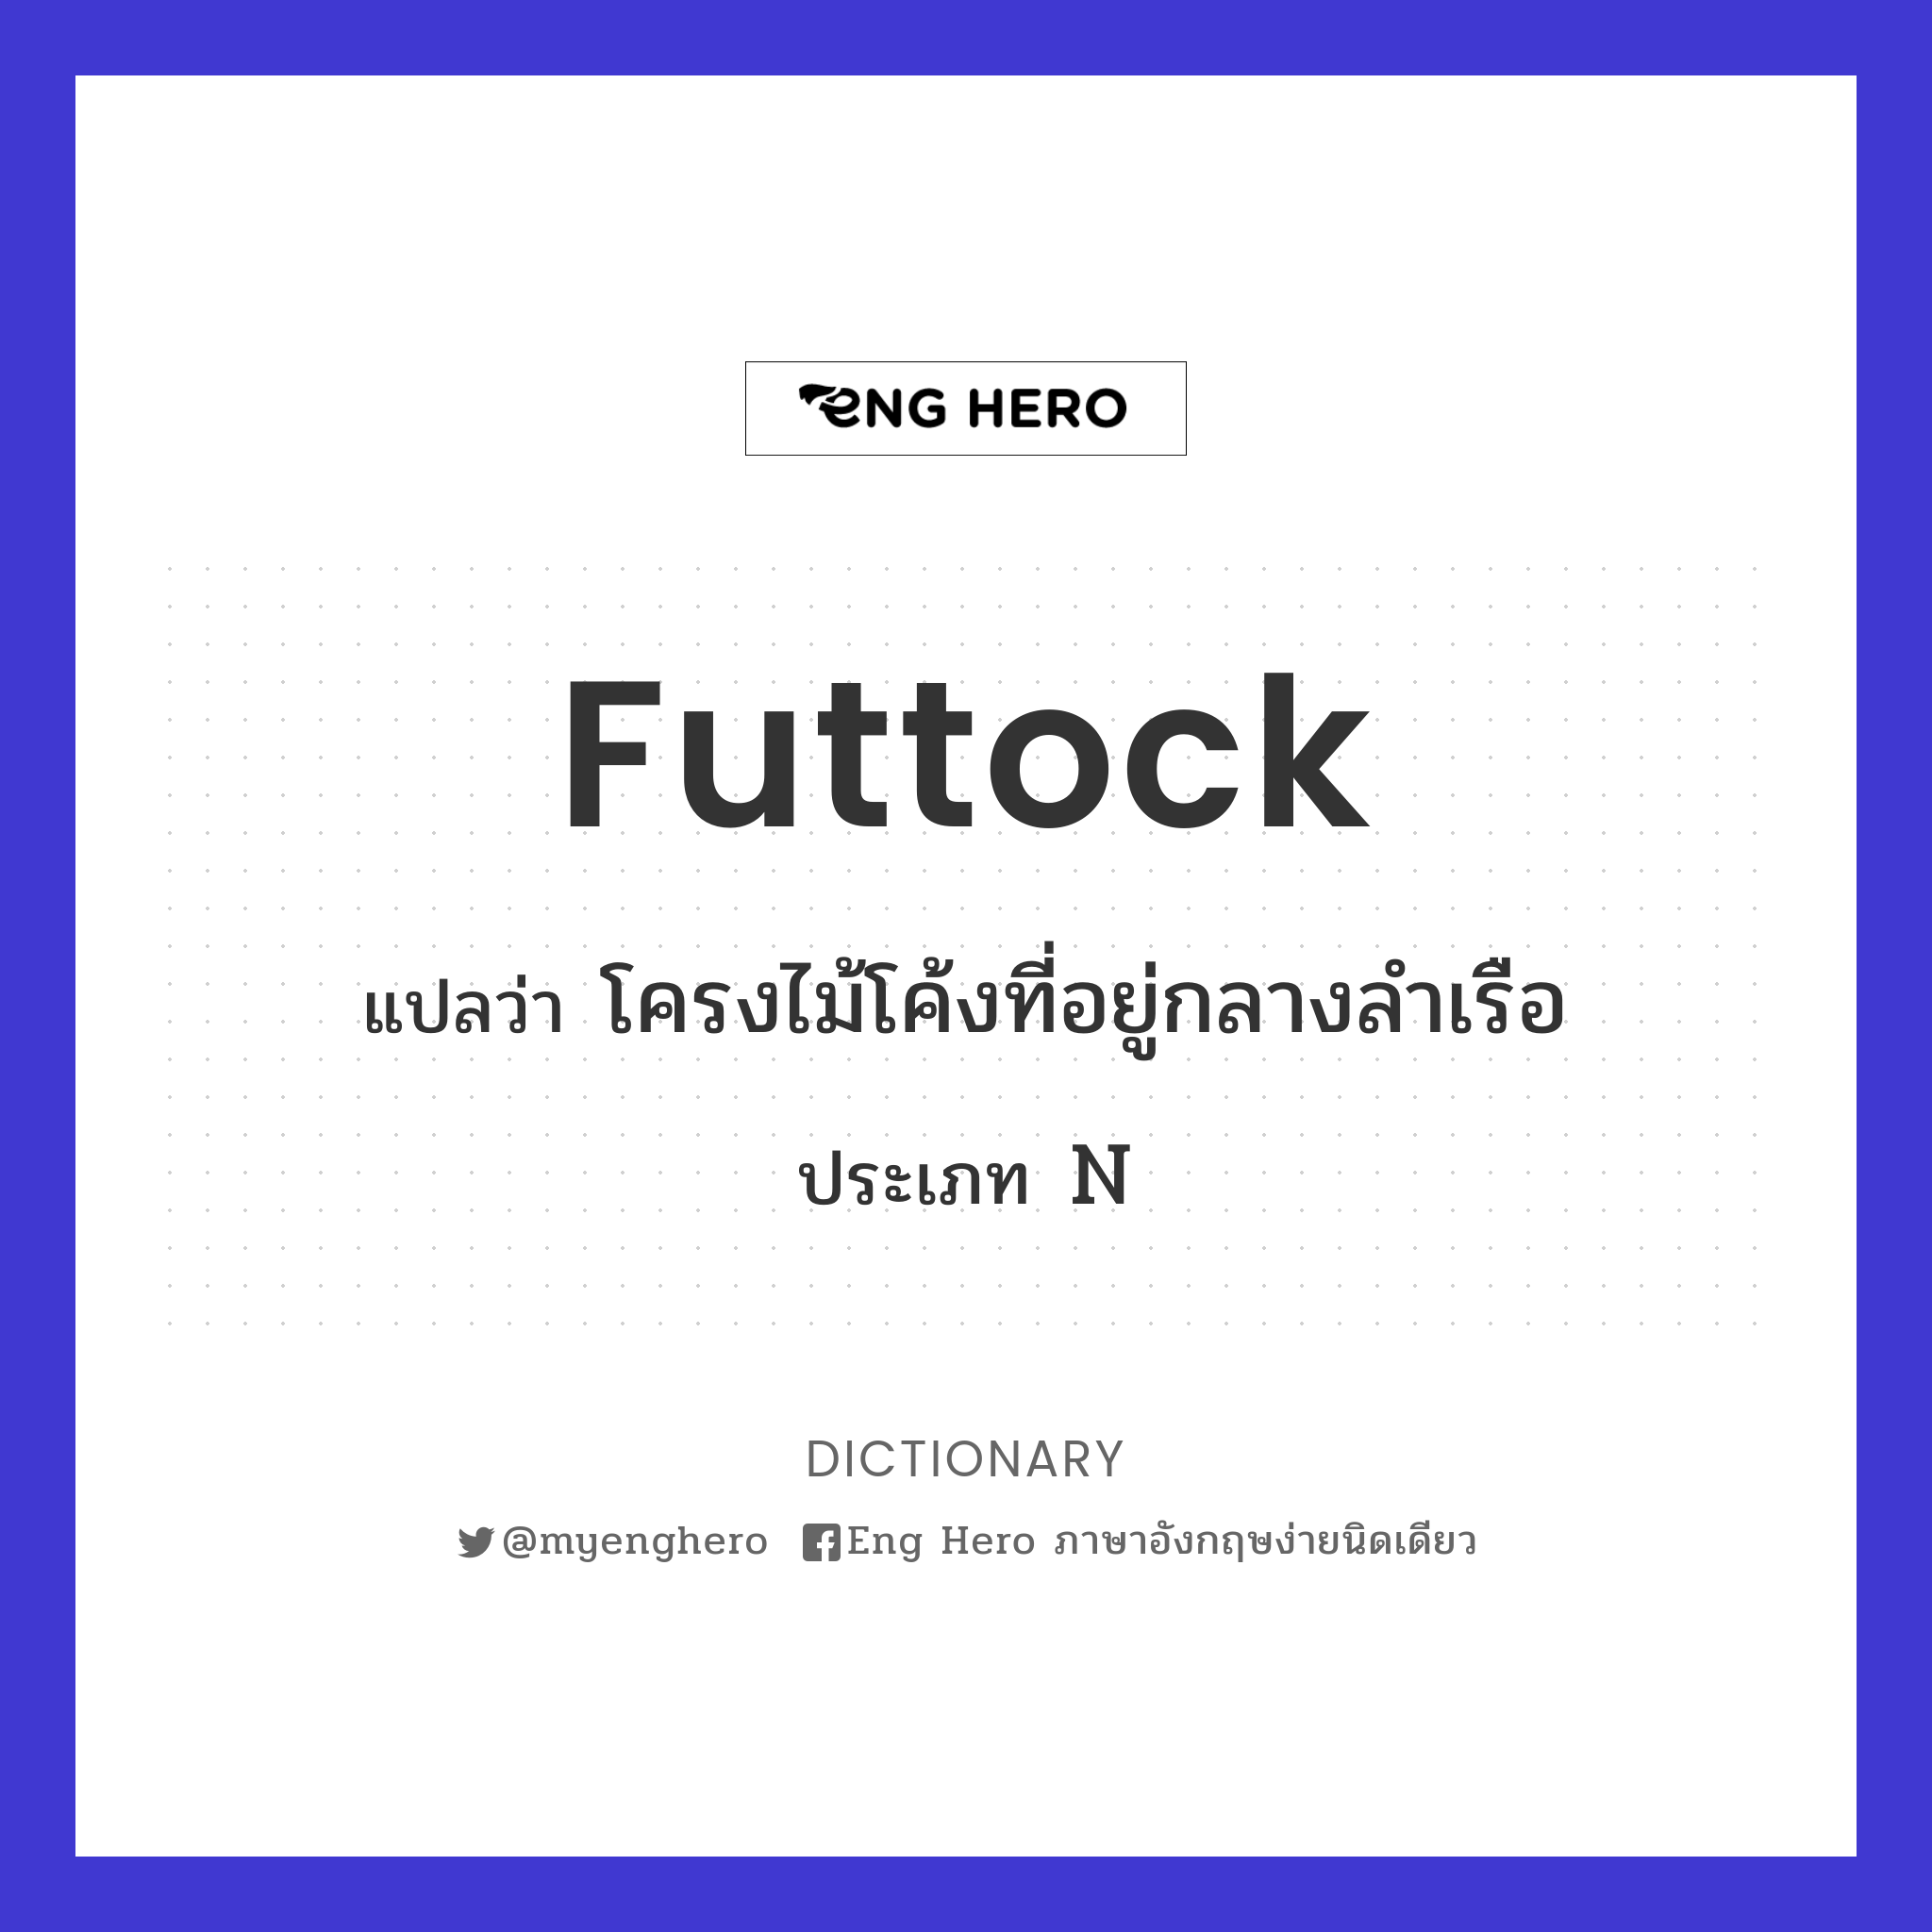 futtock